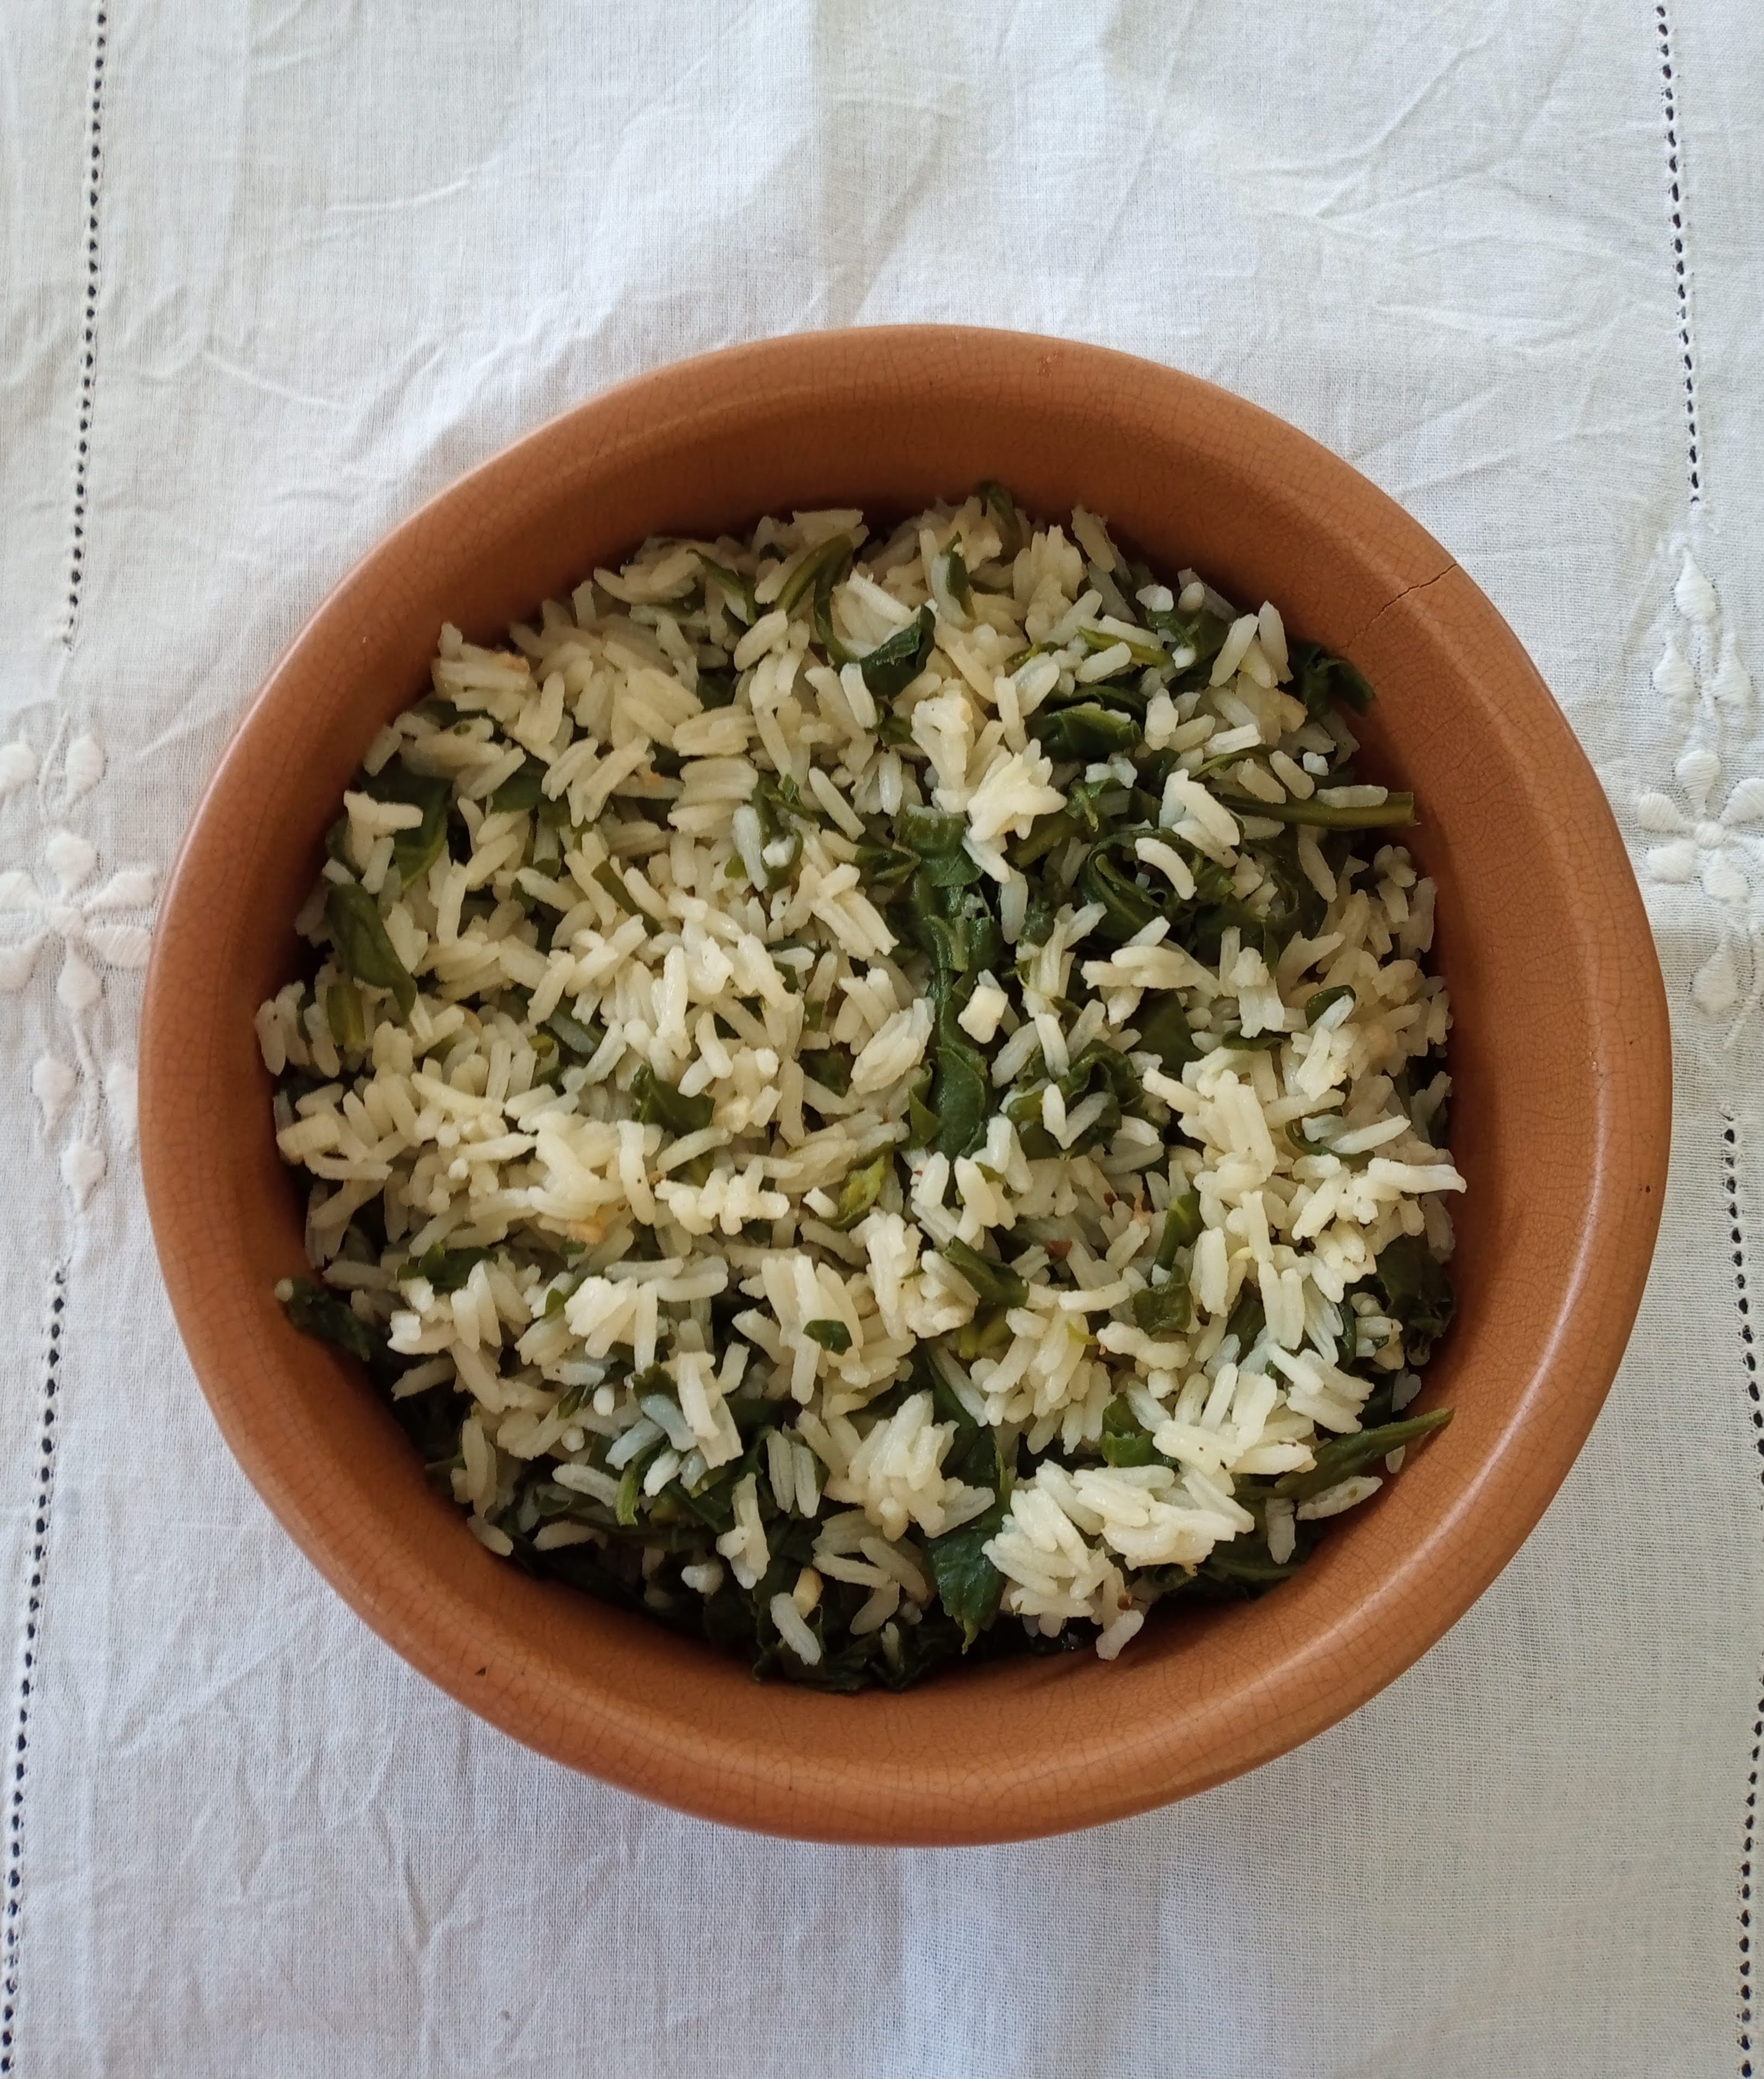 arroz com espinafre